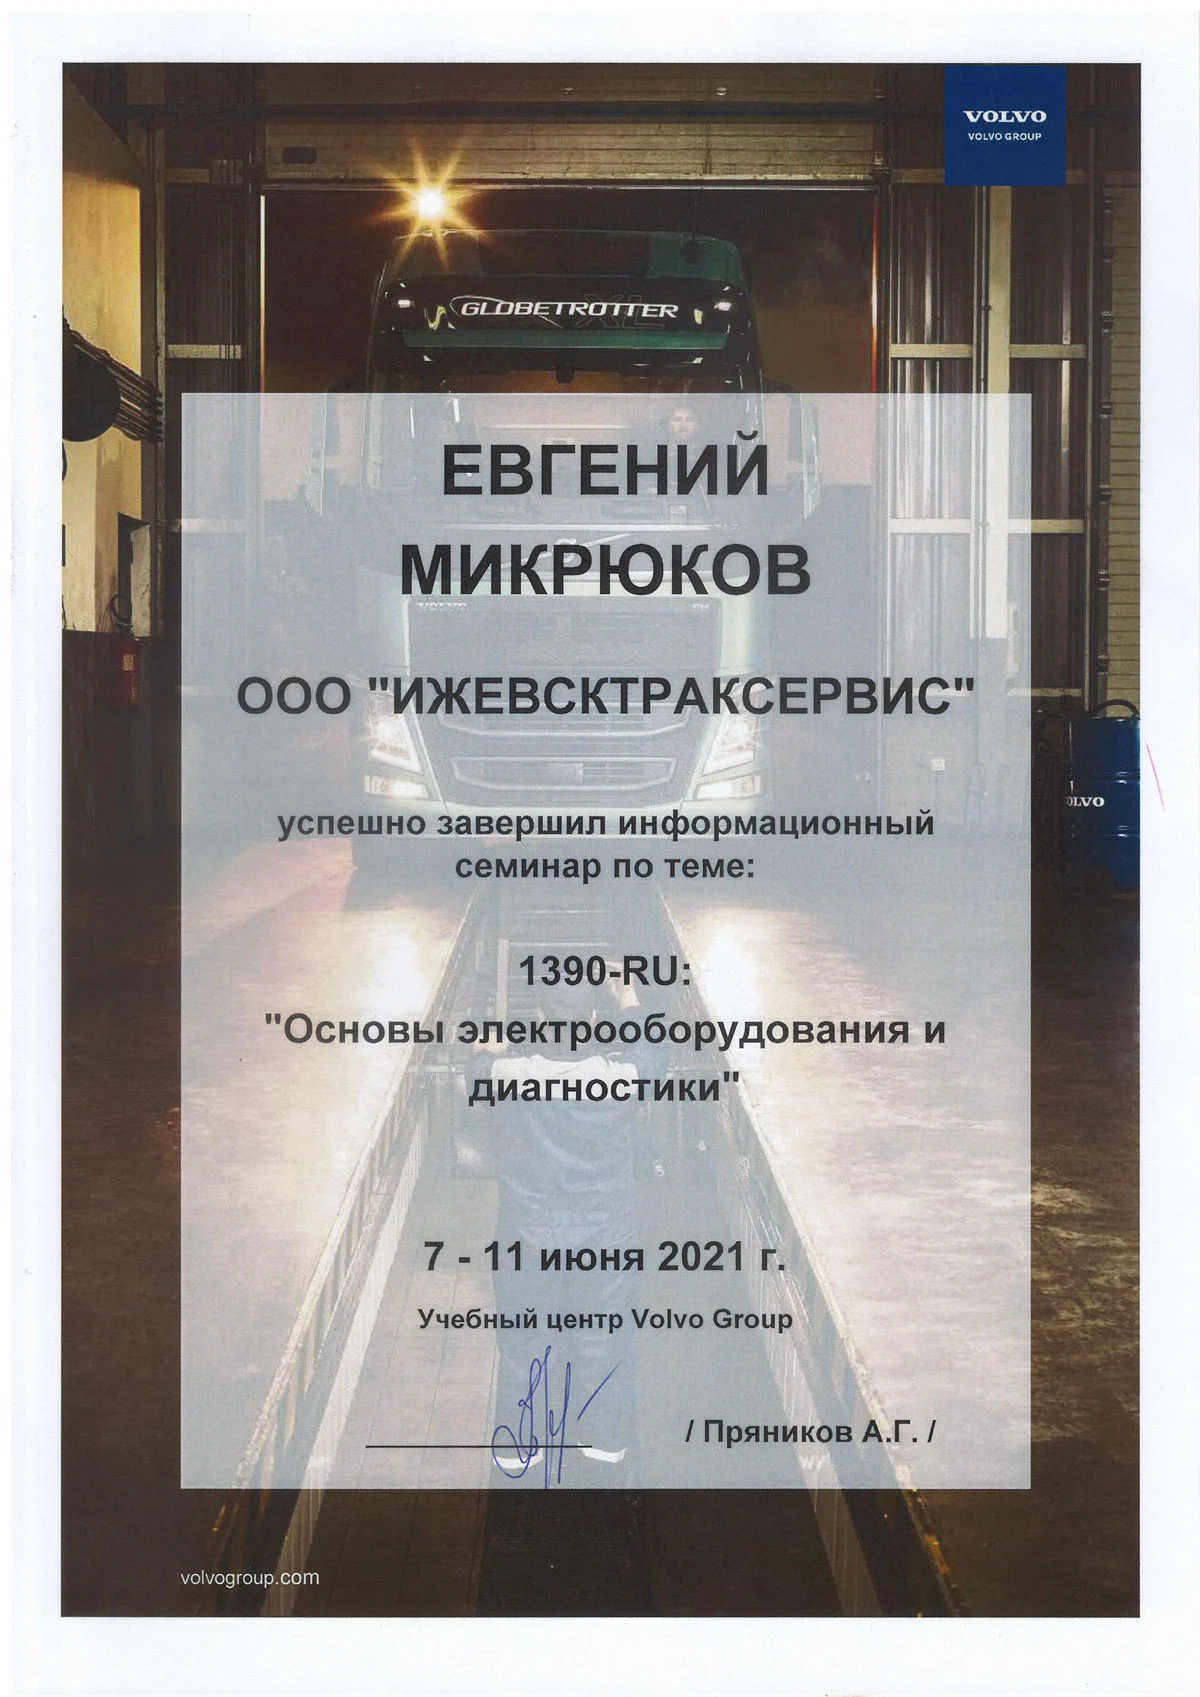 Certificate 10